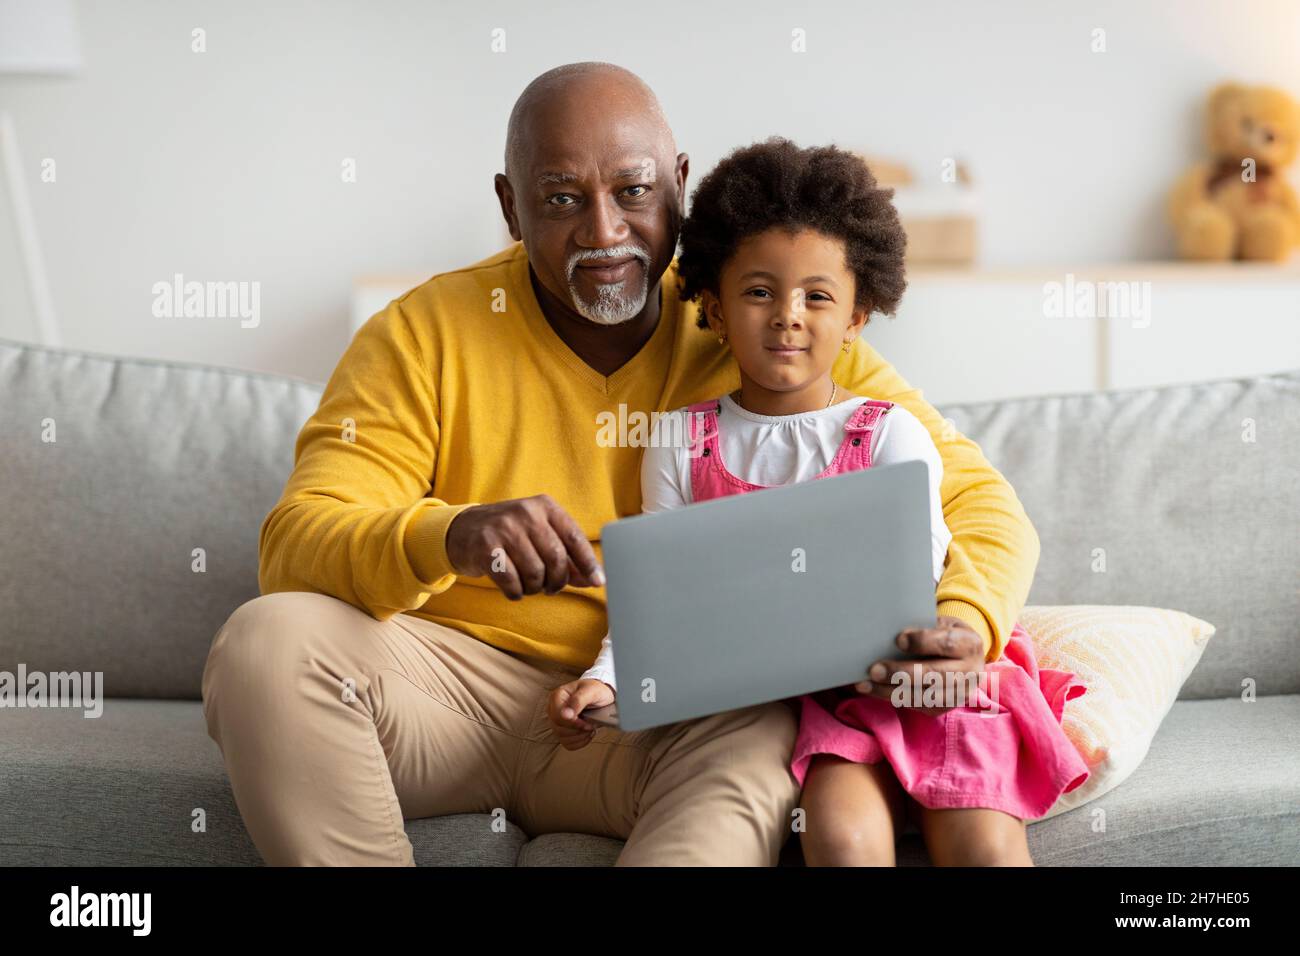 Fröhliches schwarzes kleines Kind und Opa im Internet surfen oder spielen ein Online-Spiel, sehen Cartoon auf Laptop Stockfoto